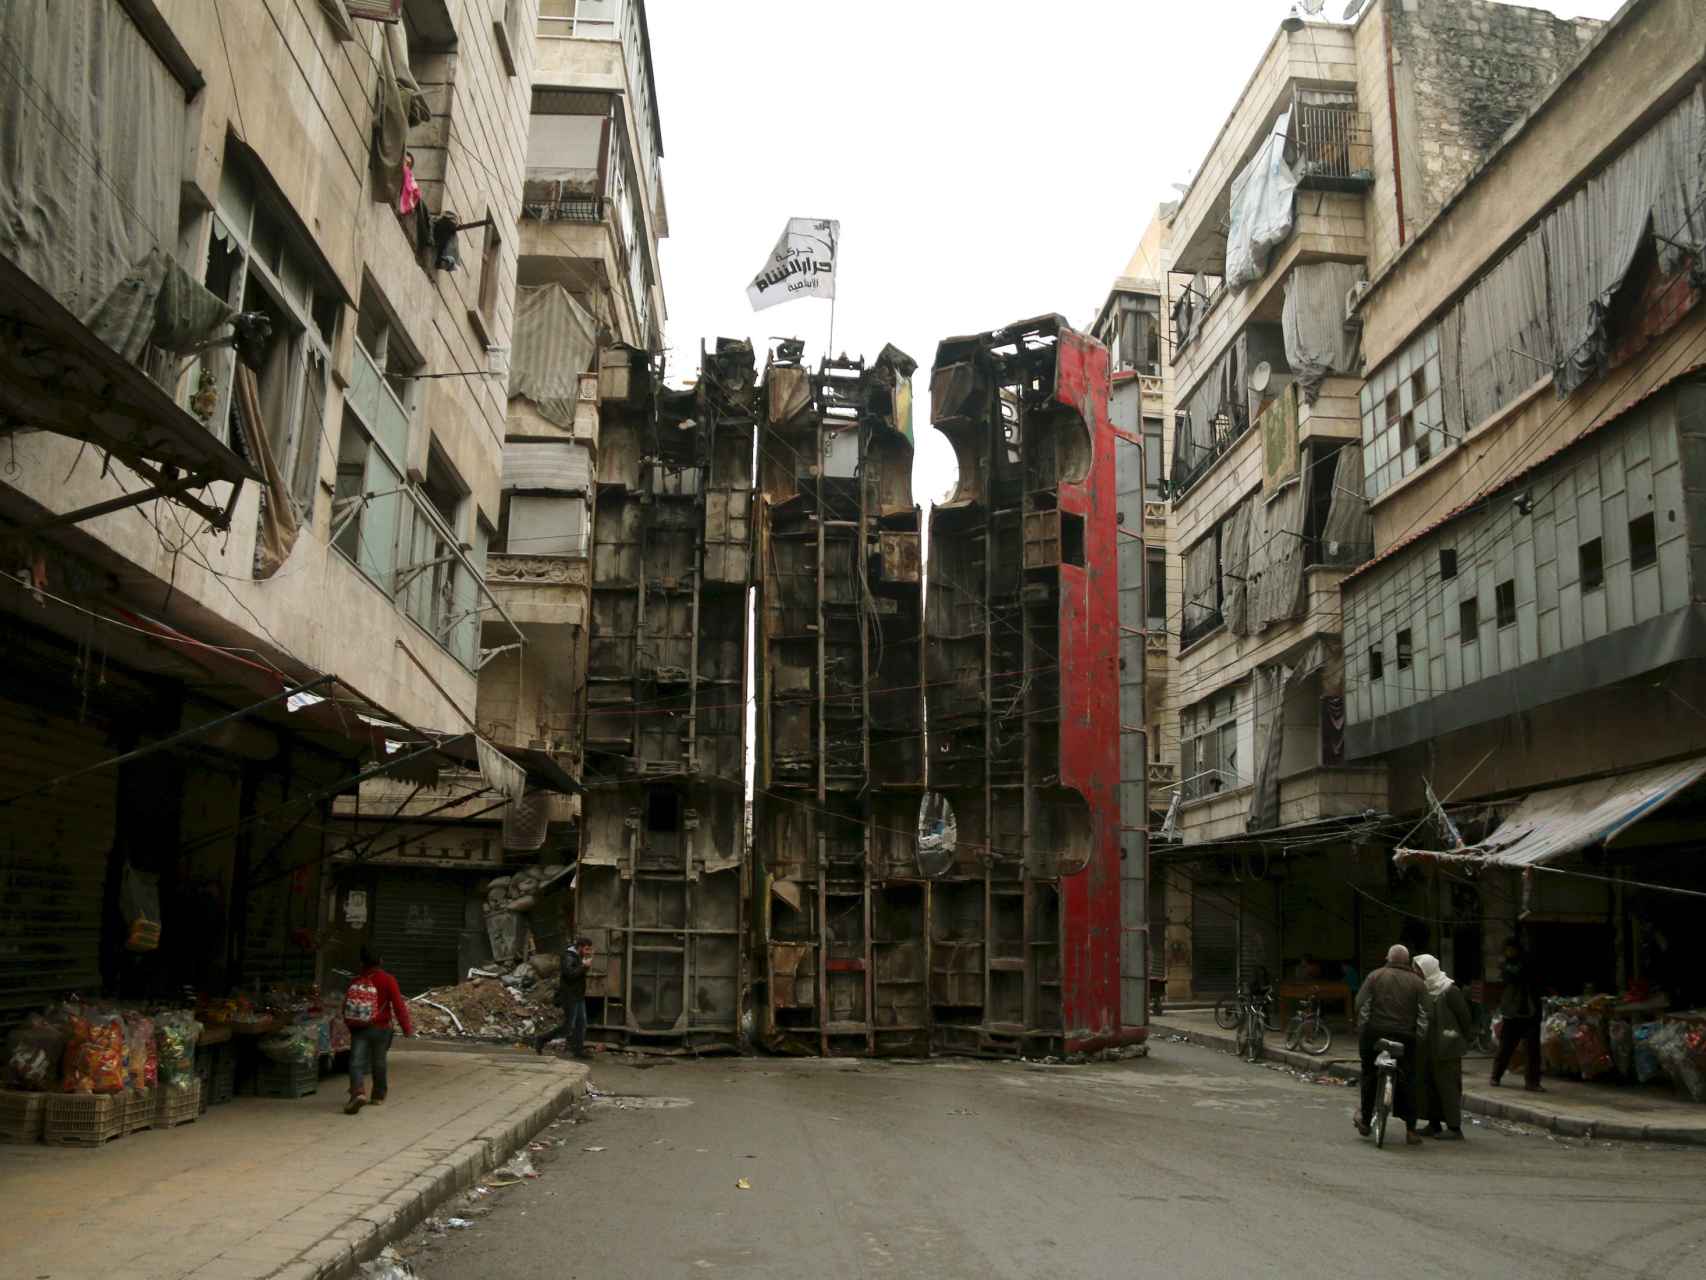 Autobuses sirven de barricada contra tiradores en Alepo.